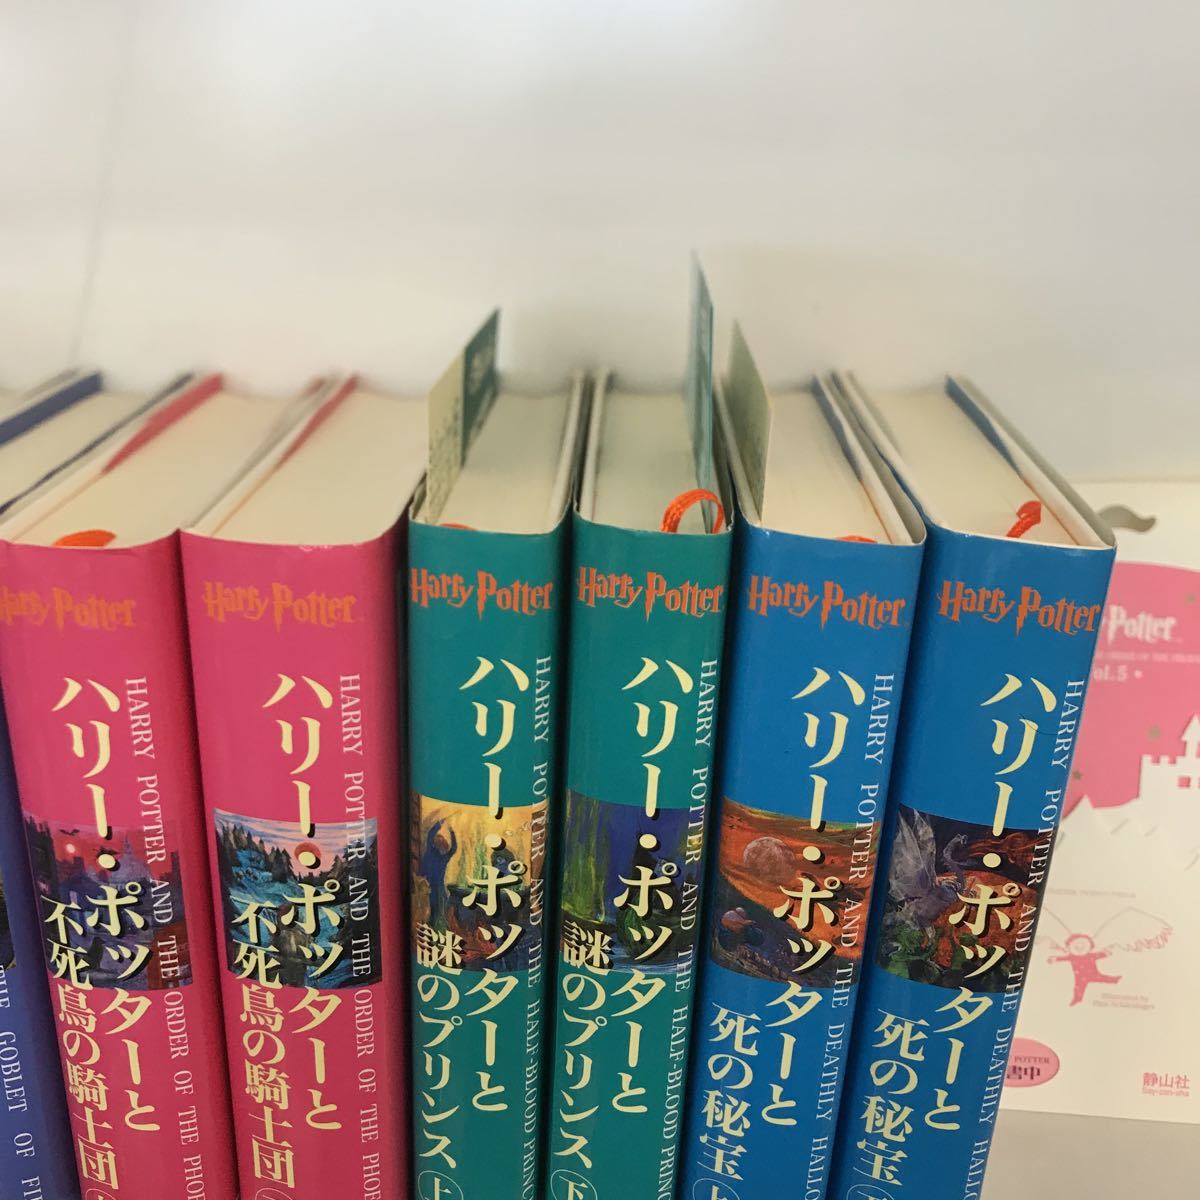 ハリーポッター 全巻セット 11冊 ハリーポッターシリーズ